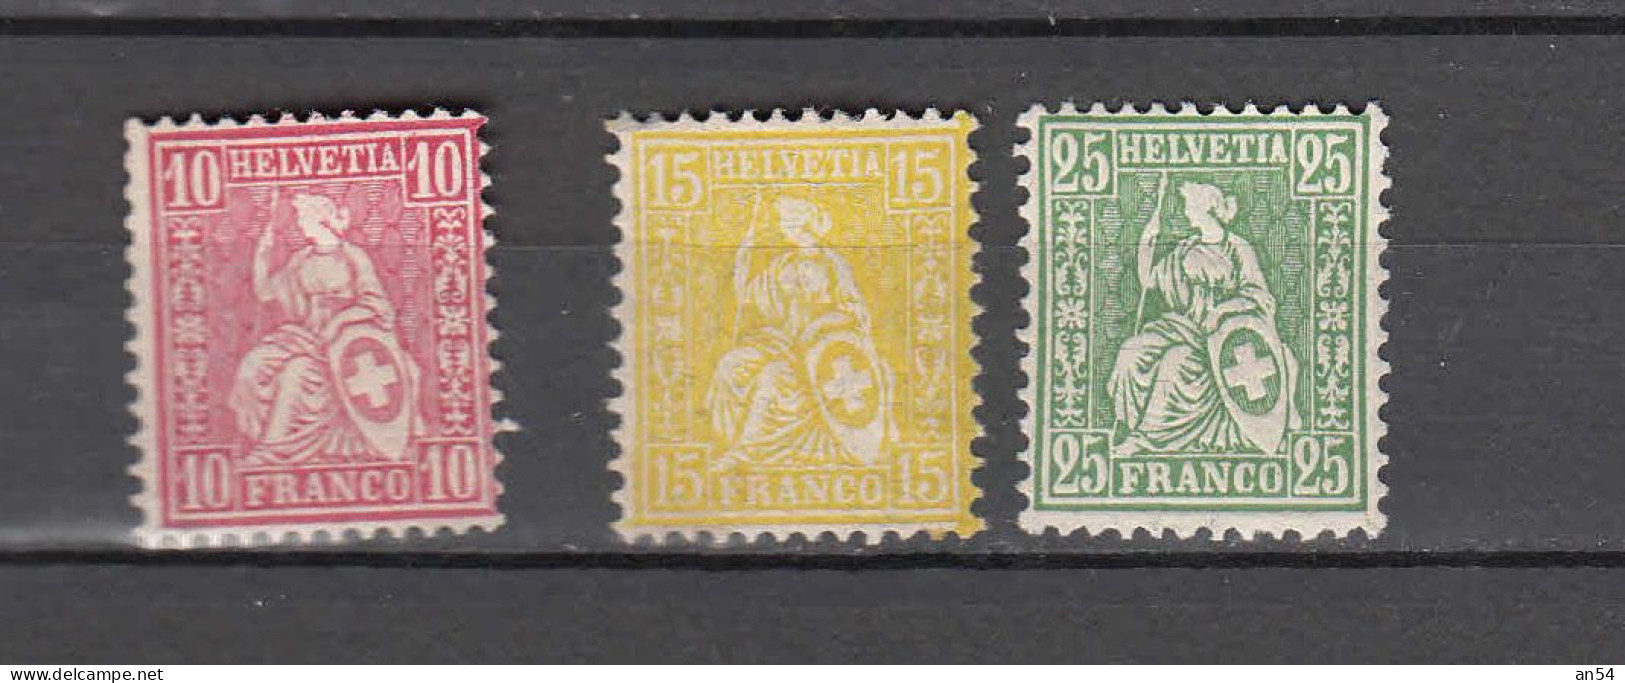 1881  PAPIER MELE   LOT    NEUFS*  COTE 90.00         CATALOGUE SBK - Unused Stamps